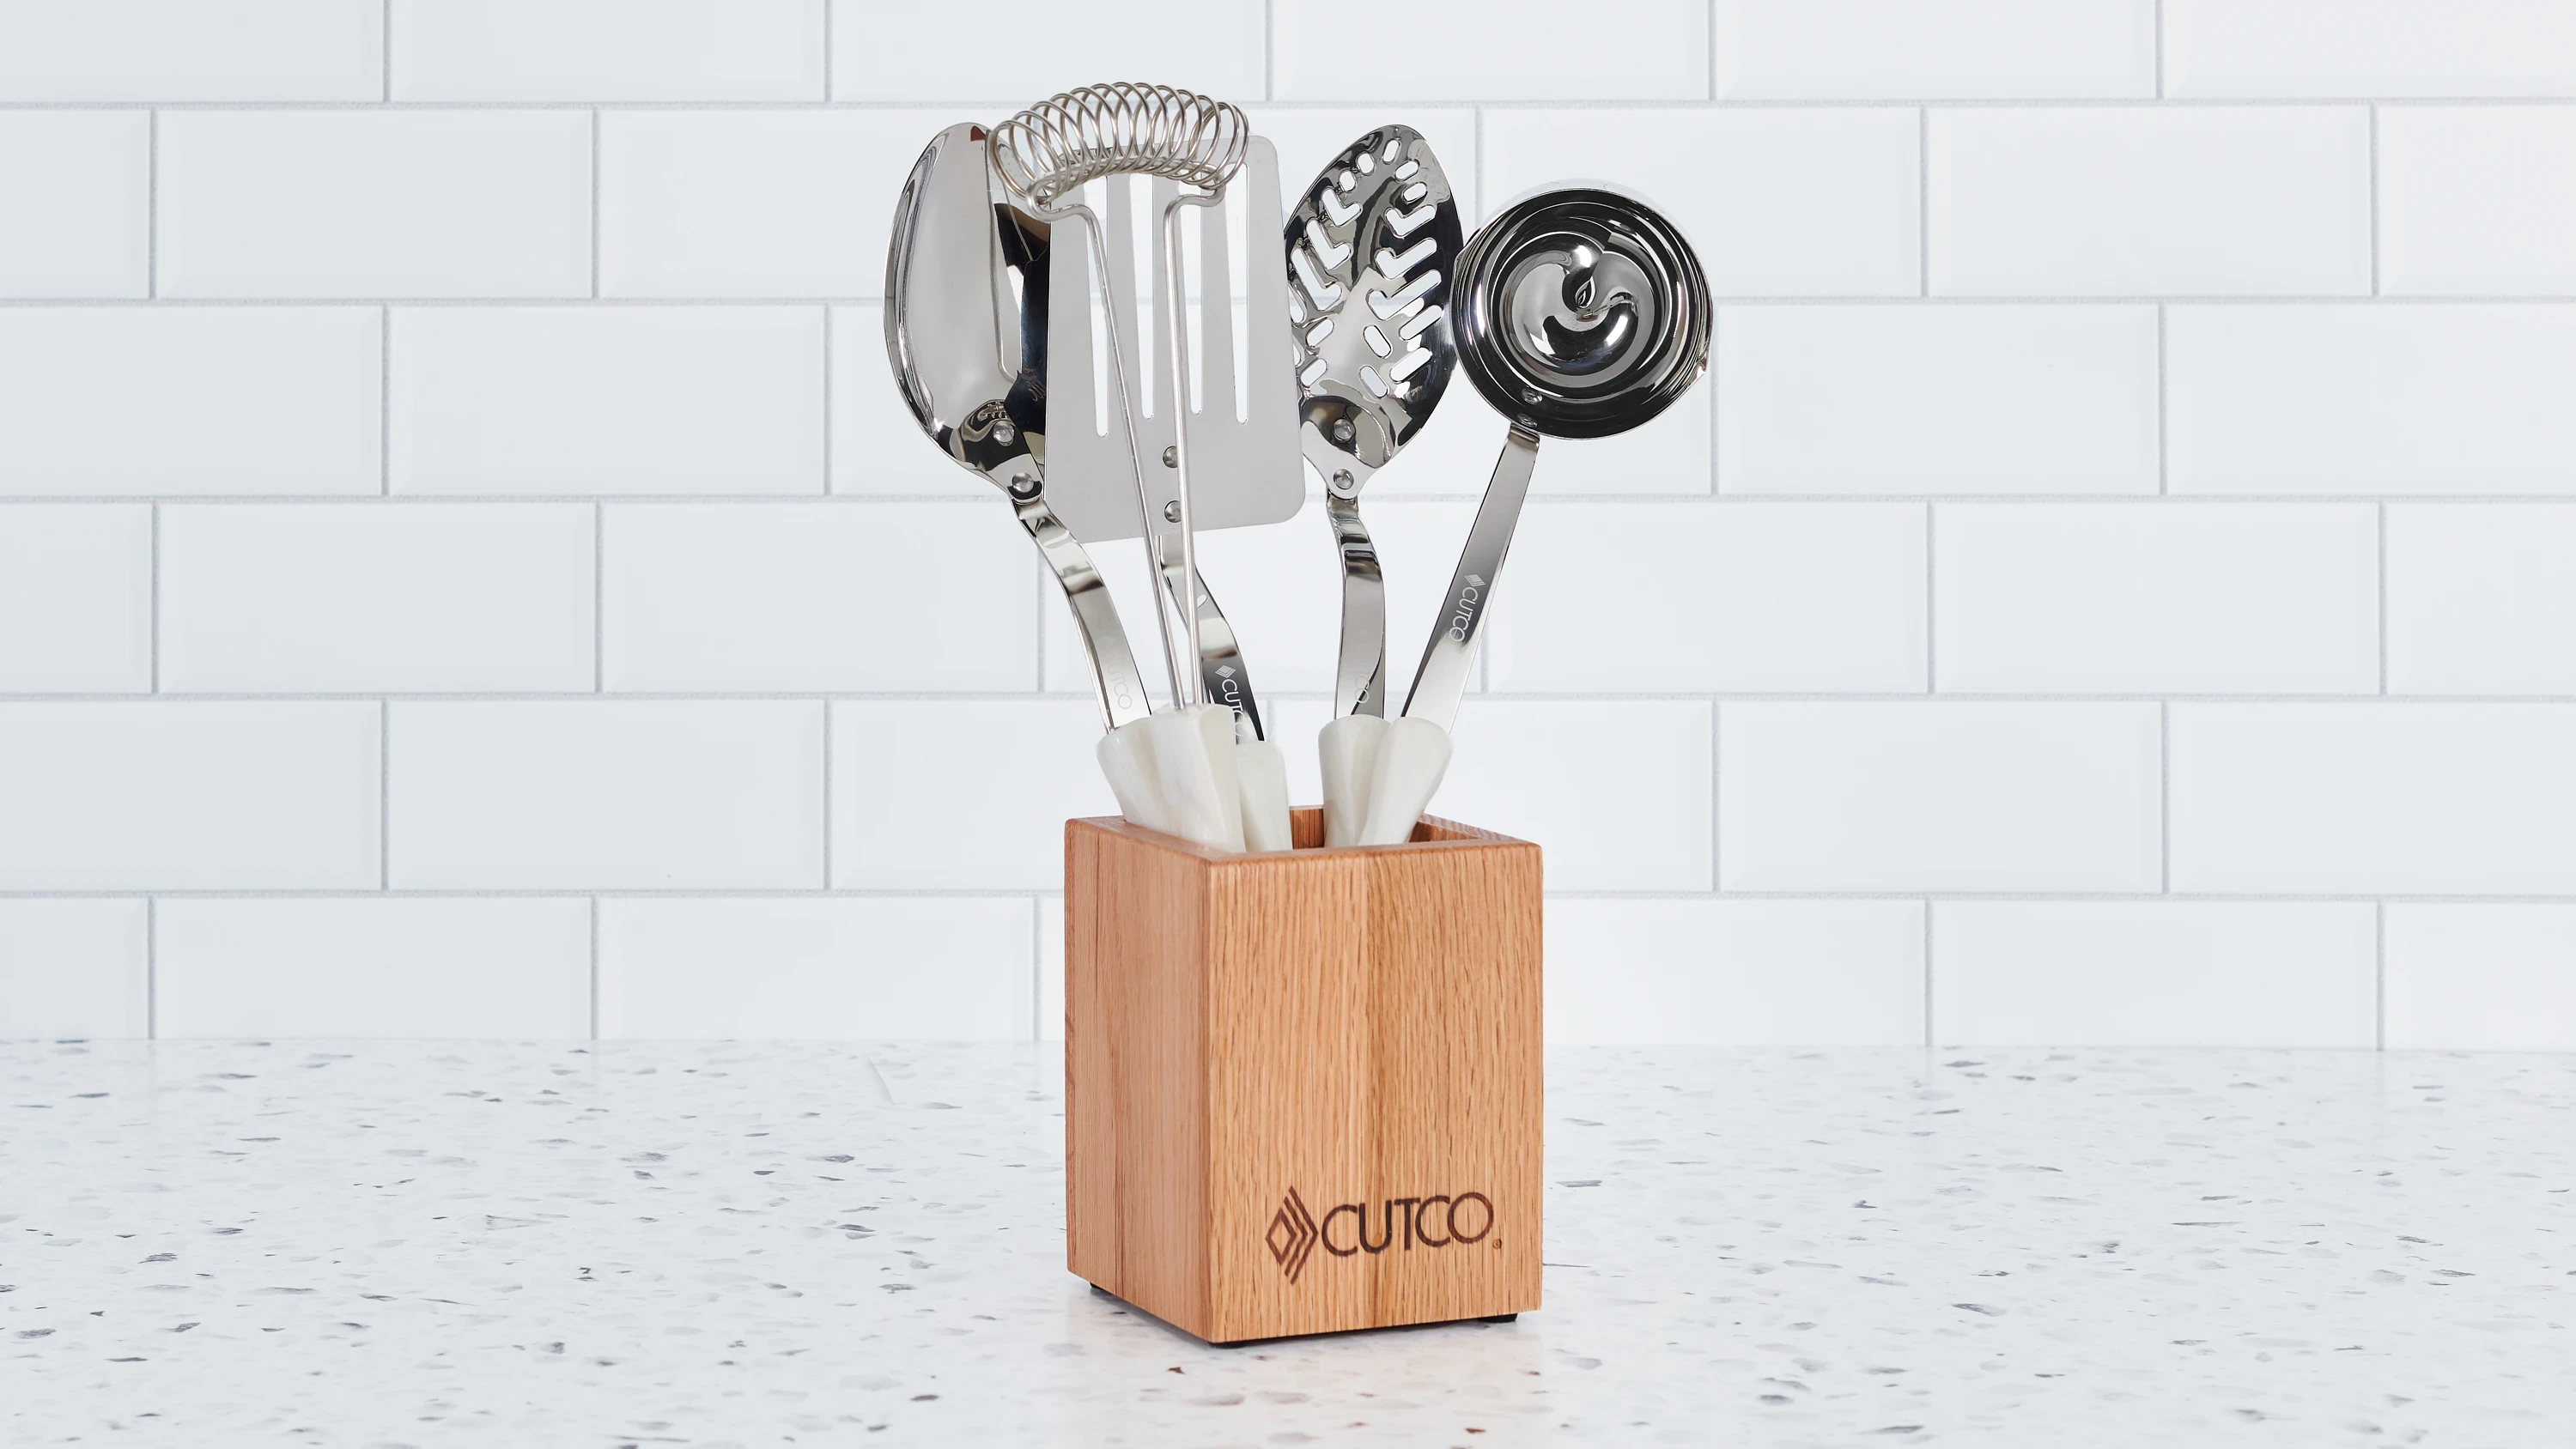 Cutco Kitchen Utensils & Gadgets